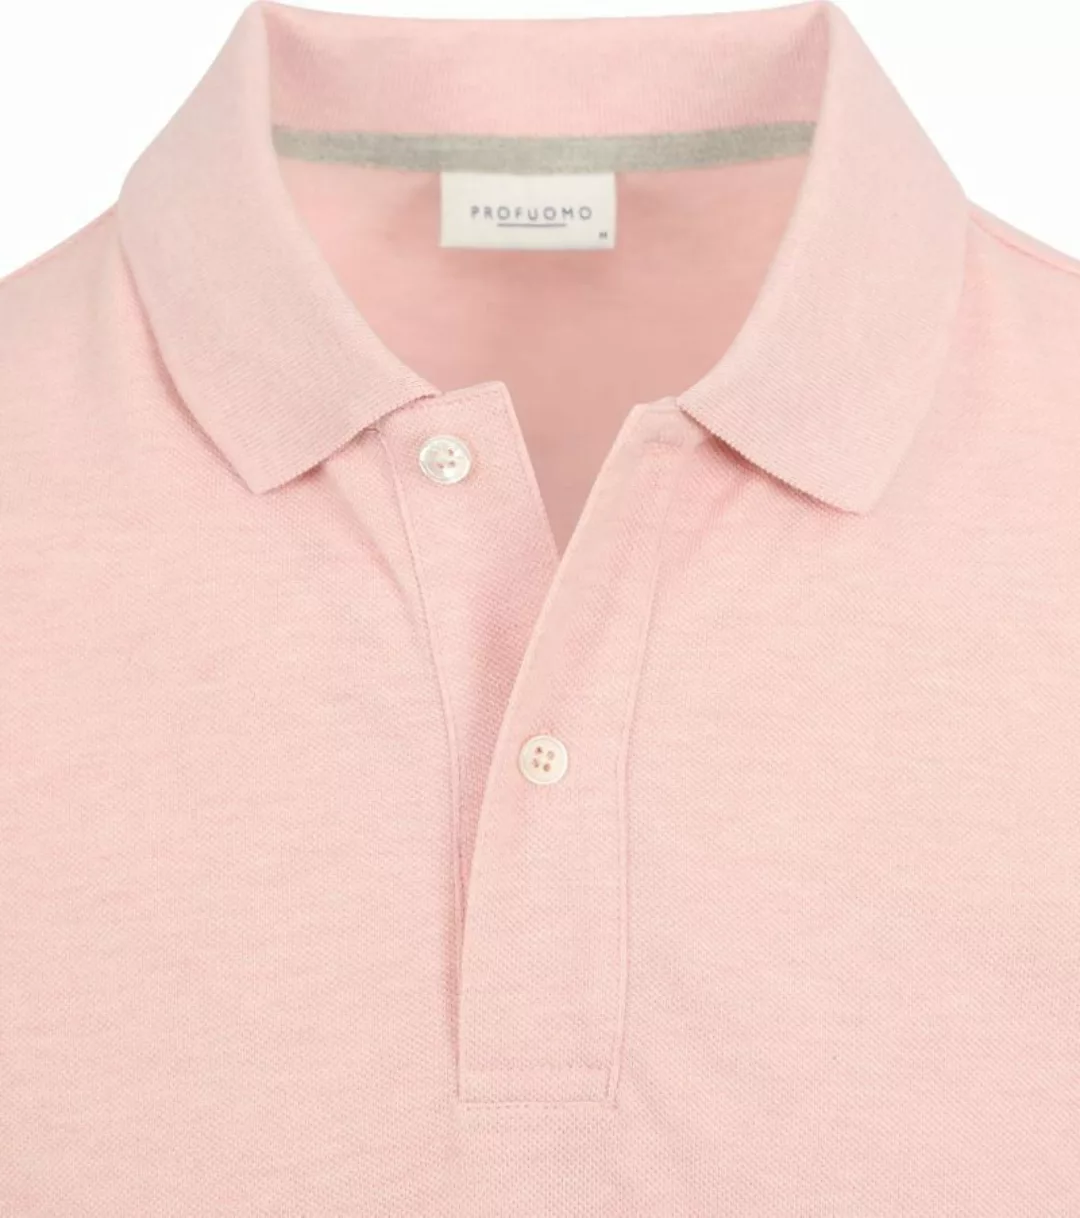 Profuomo Piqué Poloshirt Rosa - Größe L günstig online kaufen